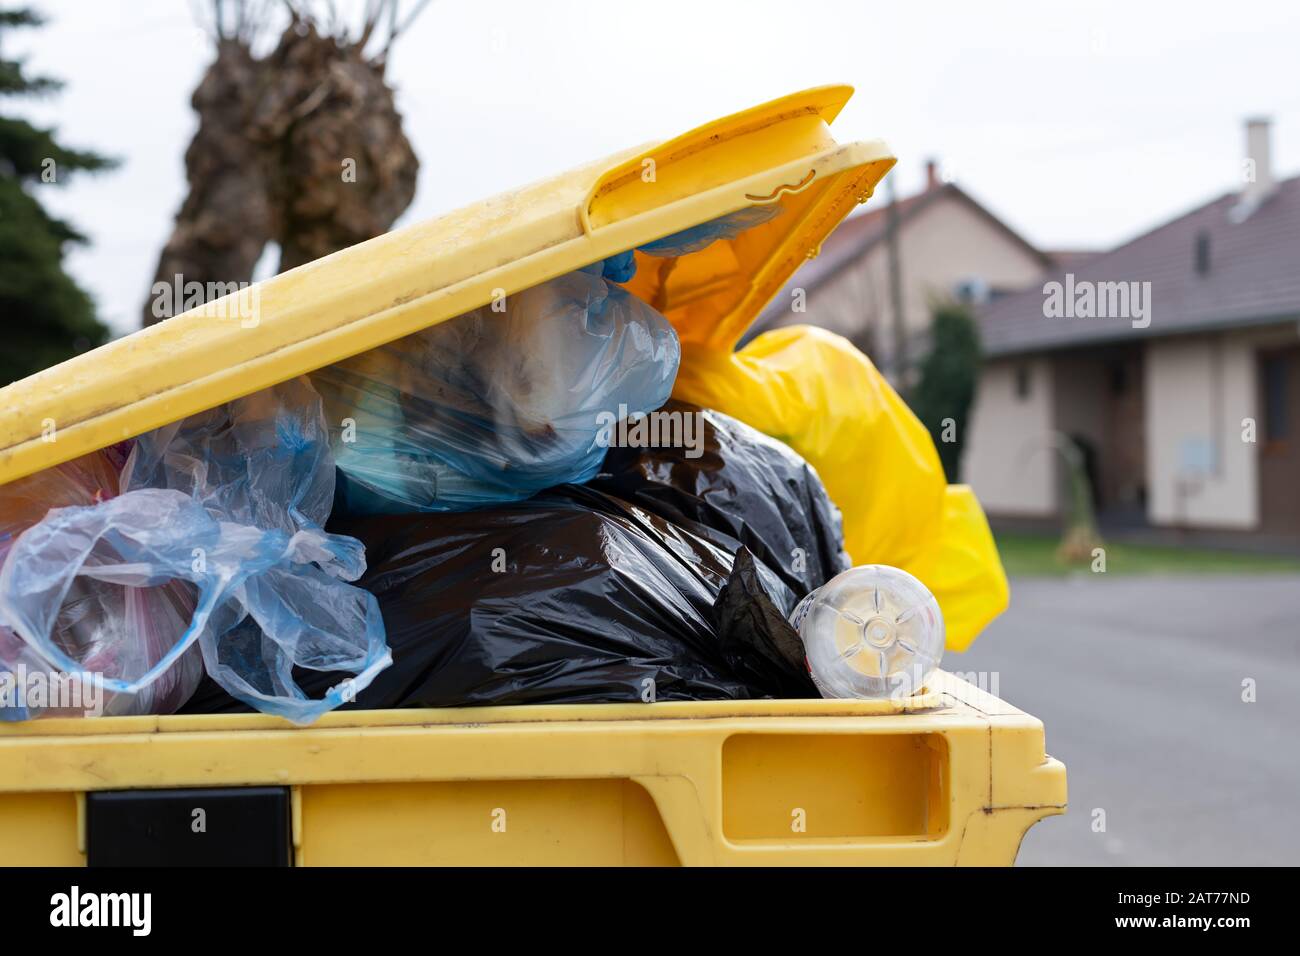 Überfüllte Müllcontainer voll mit gemischtem Müll auf einer Straße  Stockfotografie - Alamy